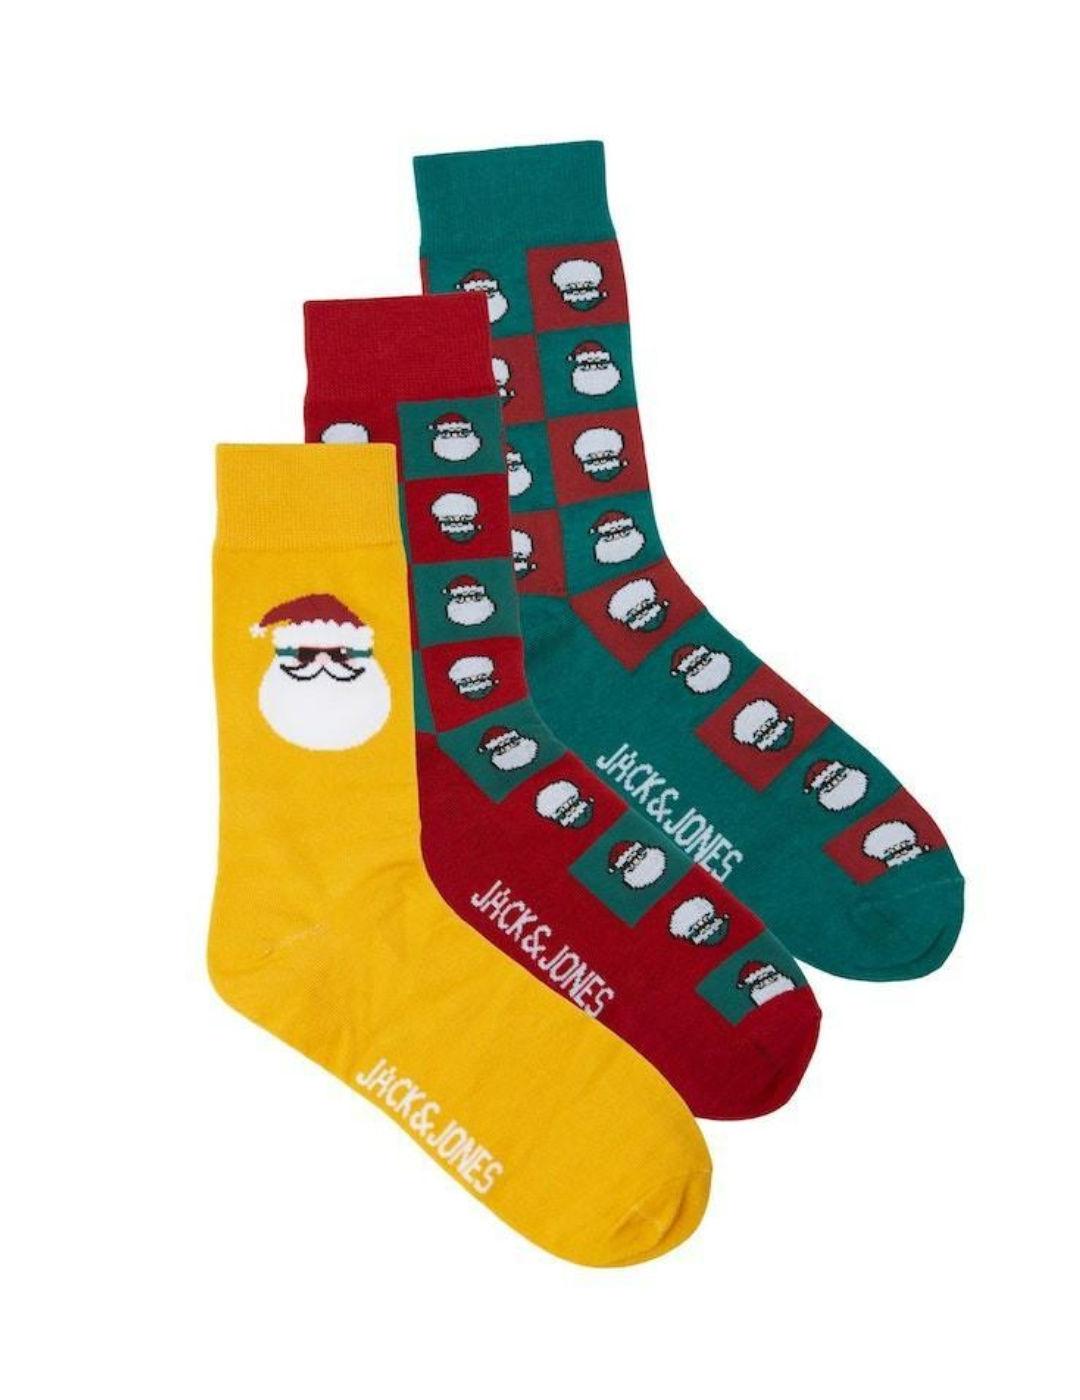 Pack de 5 calcetines de punto - Amarillo/Rojo - NIÑOS